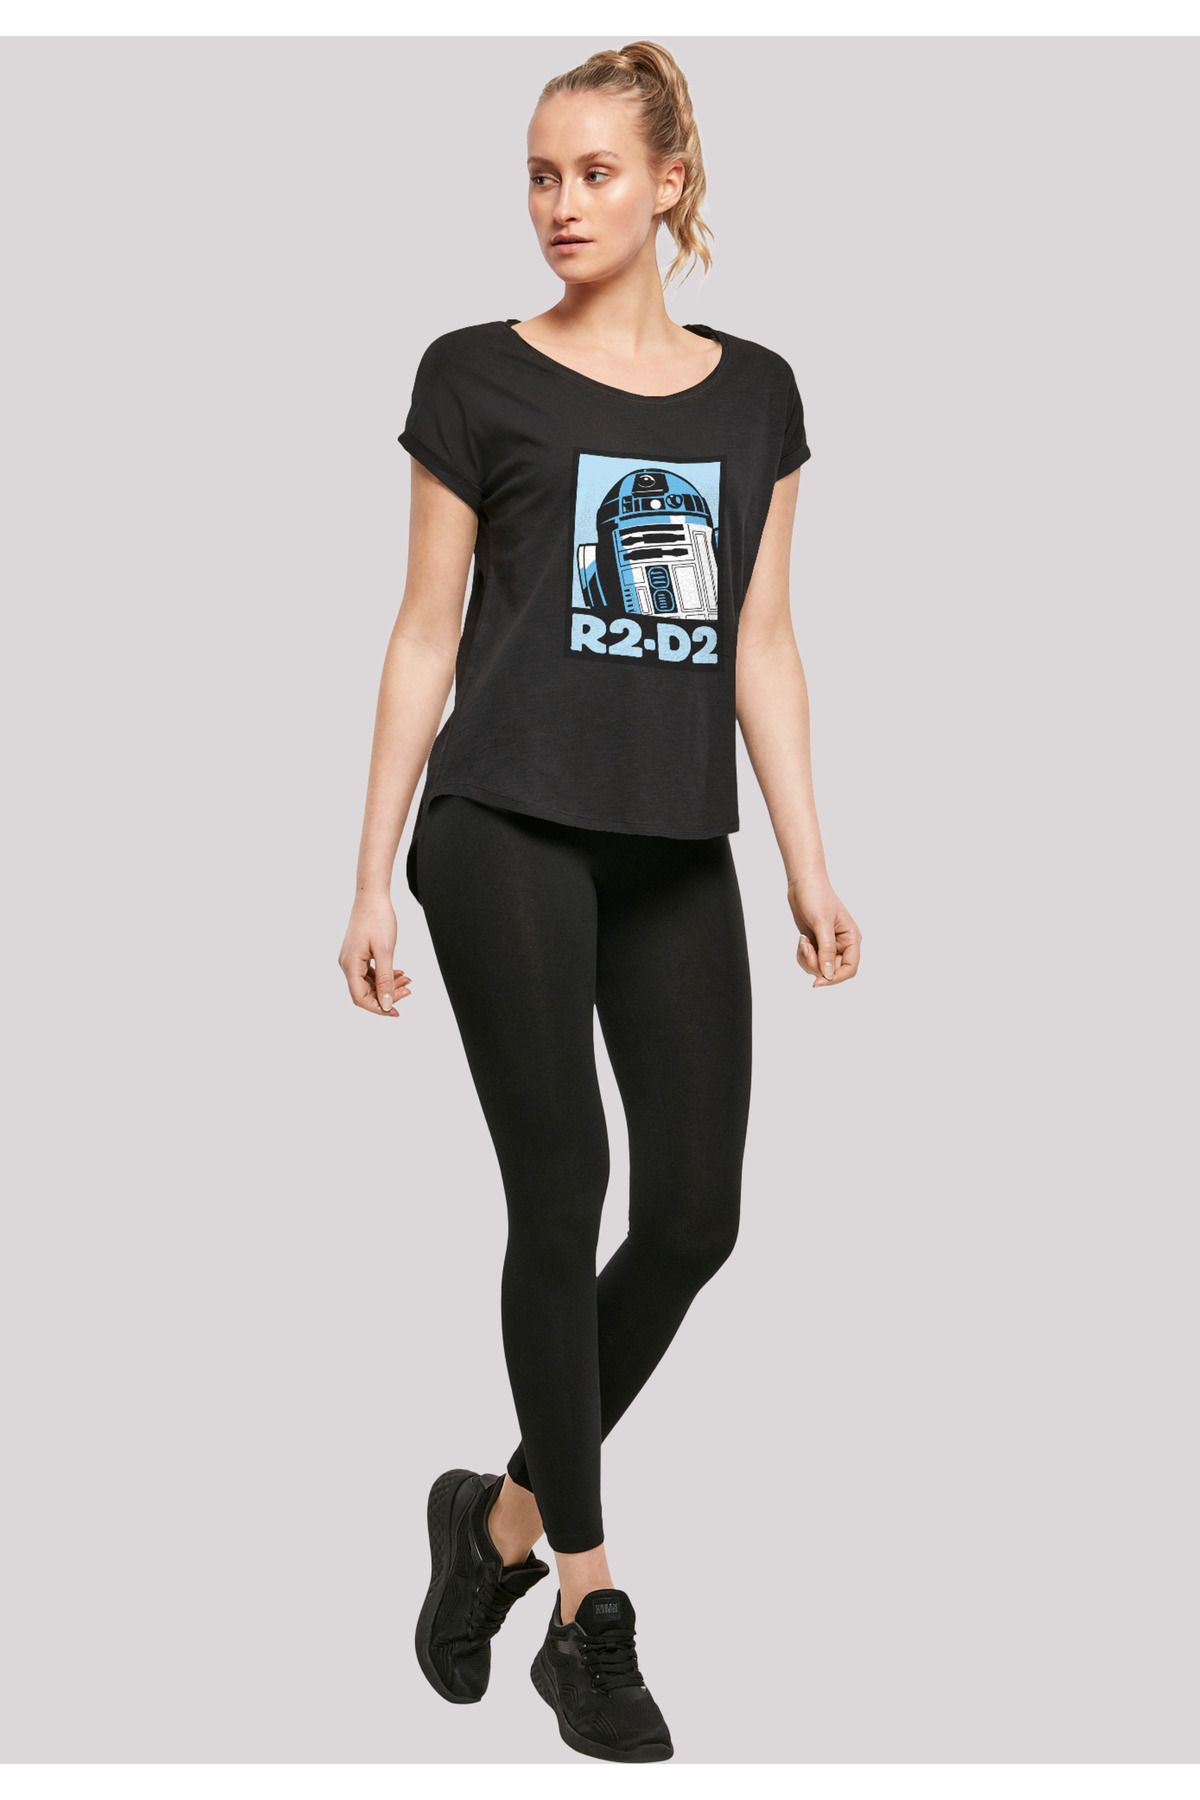 F4NT4STIC Damen Star Wars Poster mit R2-D2 - Ladies Trendyol Slub Long T-Shirt